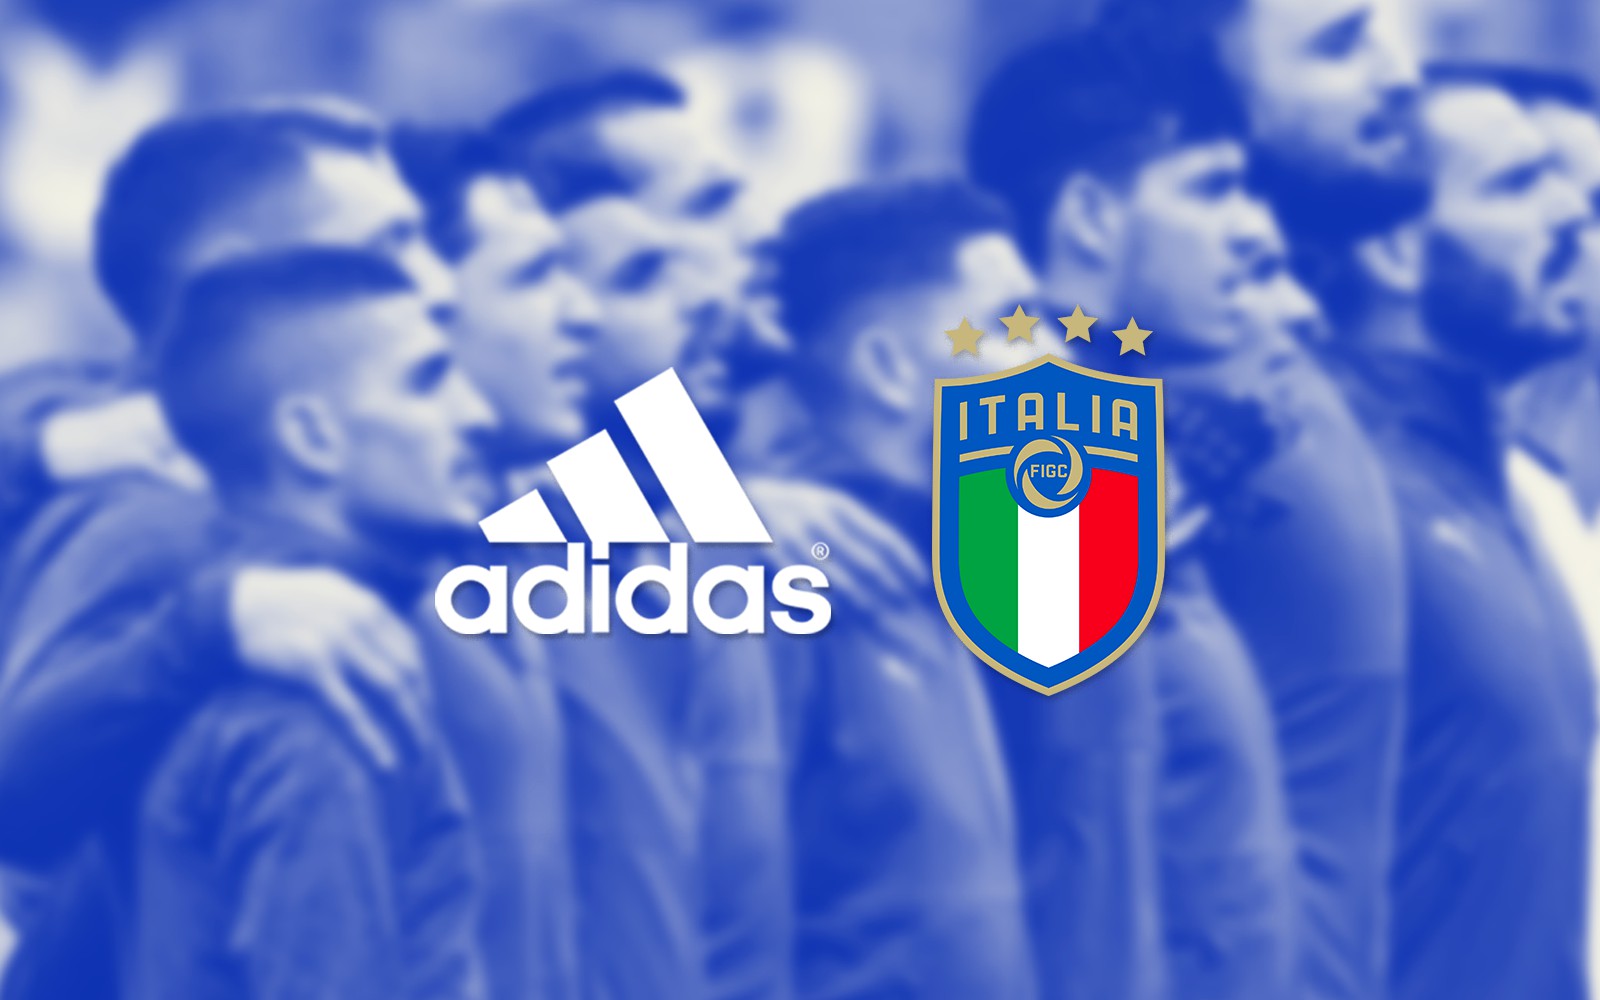 Italie: Voici les premiers maillots de la Nazionale avec Adidas (photos)